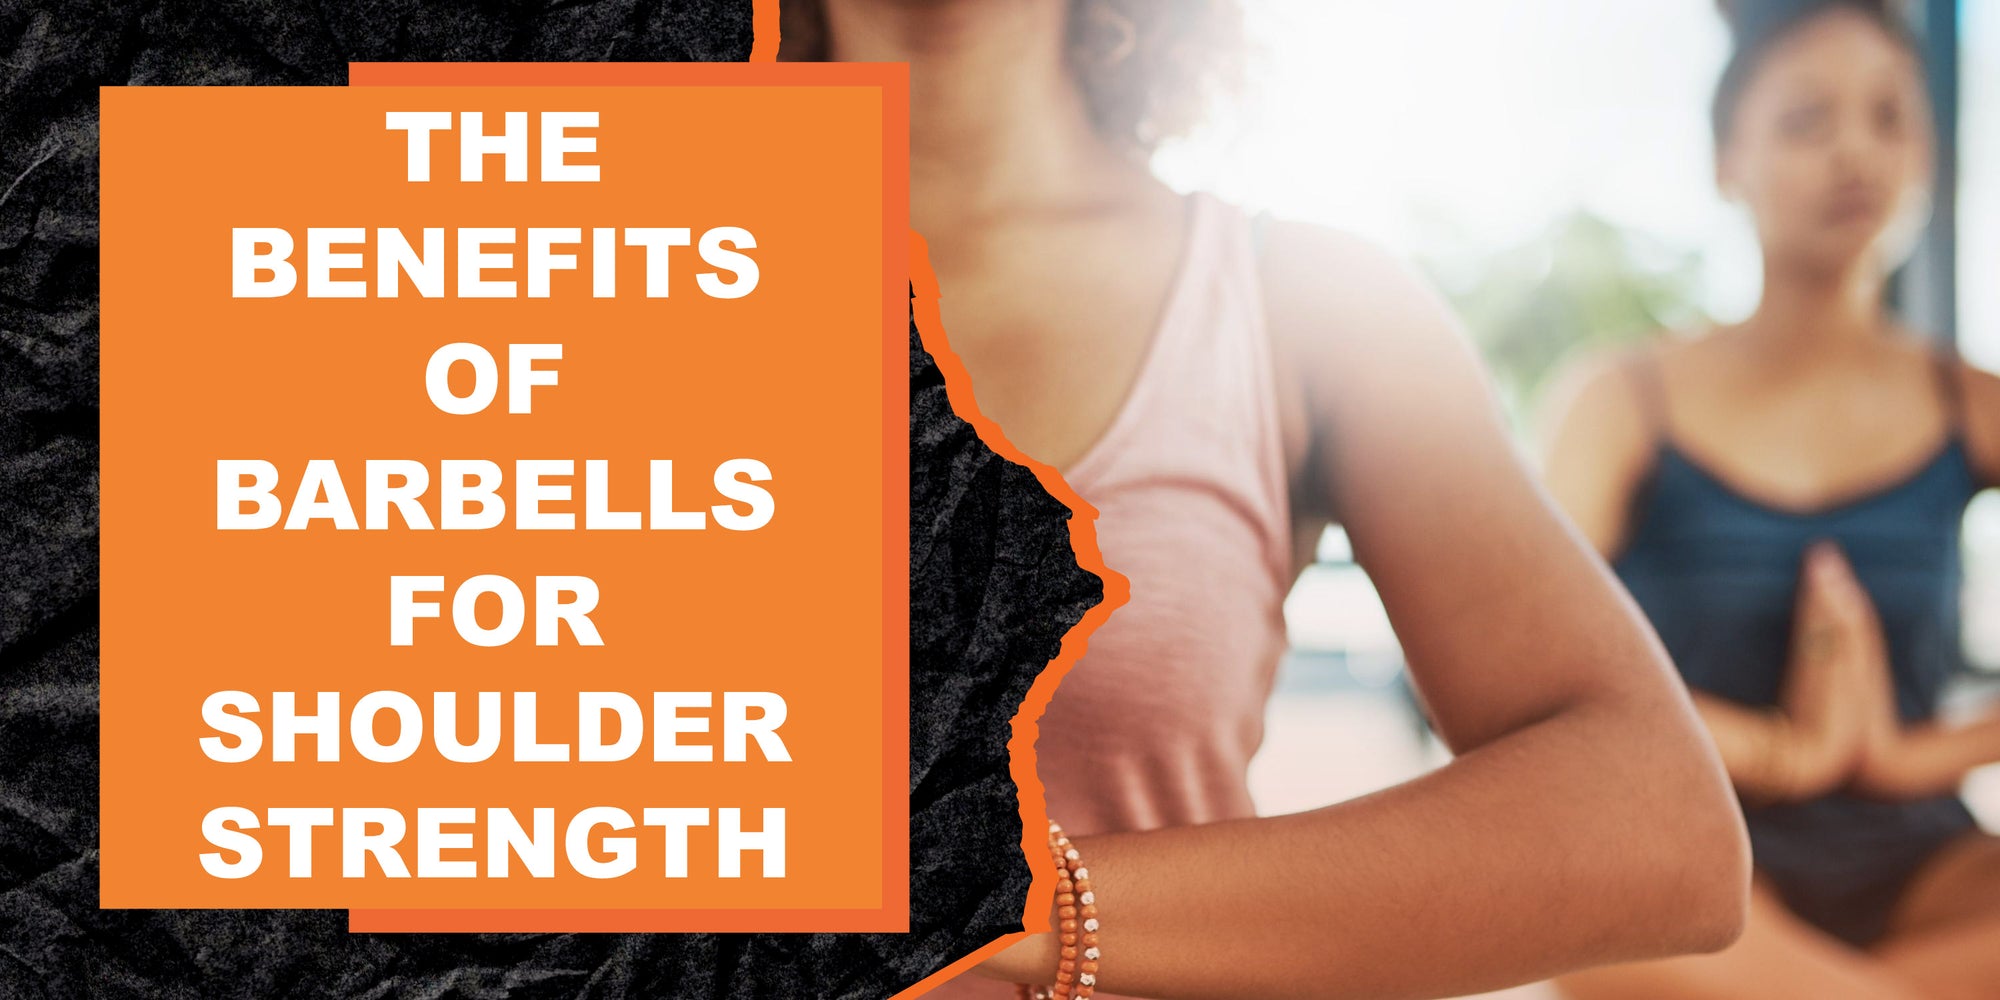 The Benefits of Barbells for Shoulder Strength